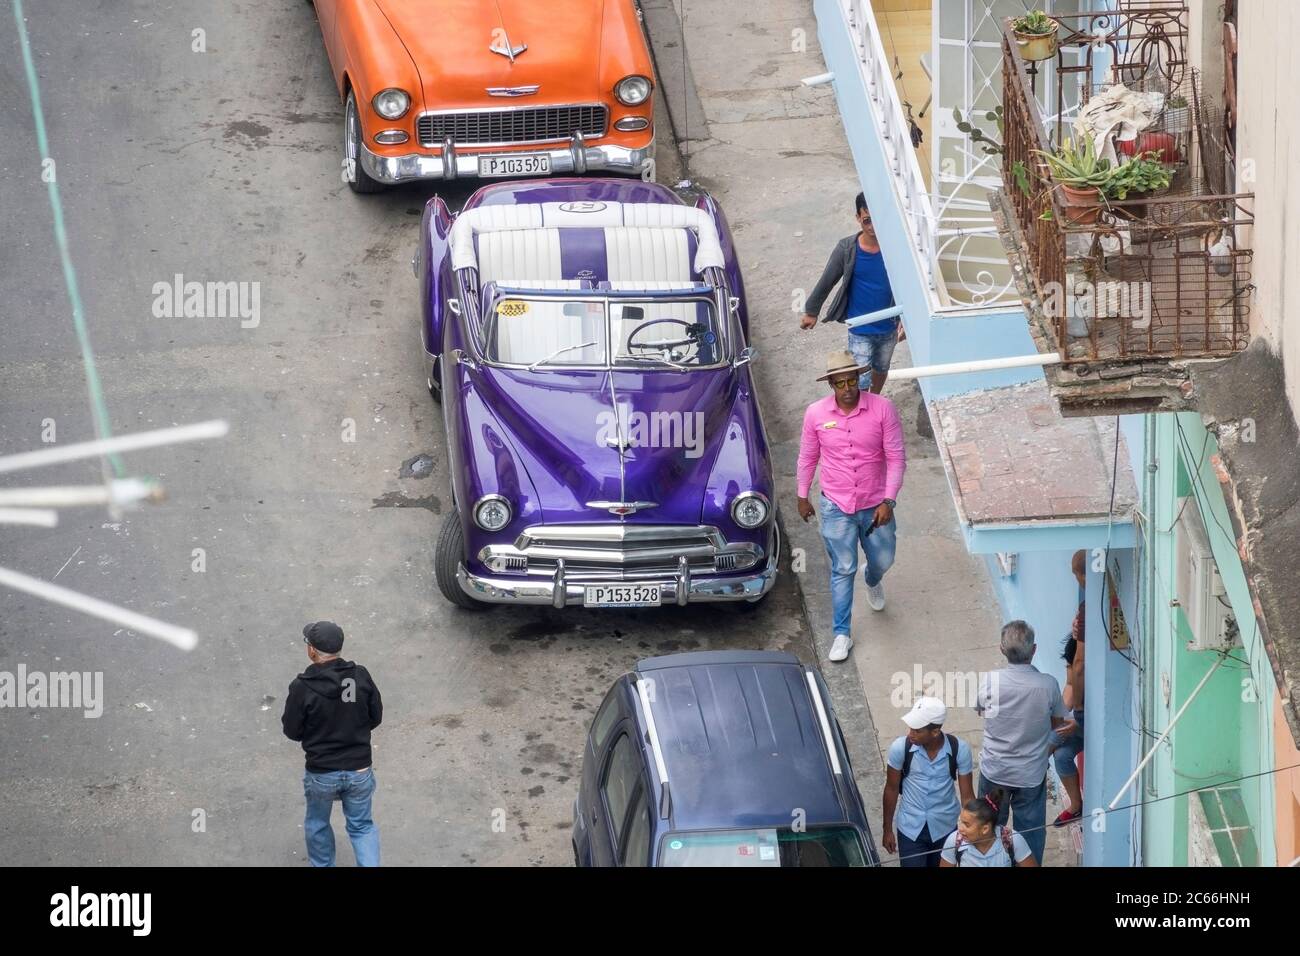 Cuba, l'Avana, la scena stradale, le auto d'epoca e i passanti, vista dall'alto Foto Stock